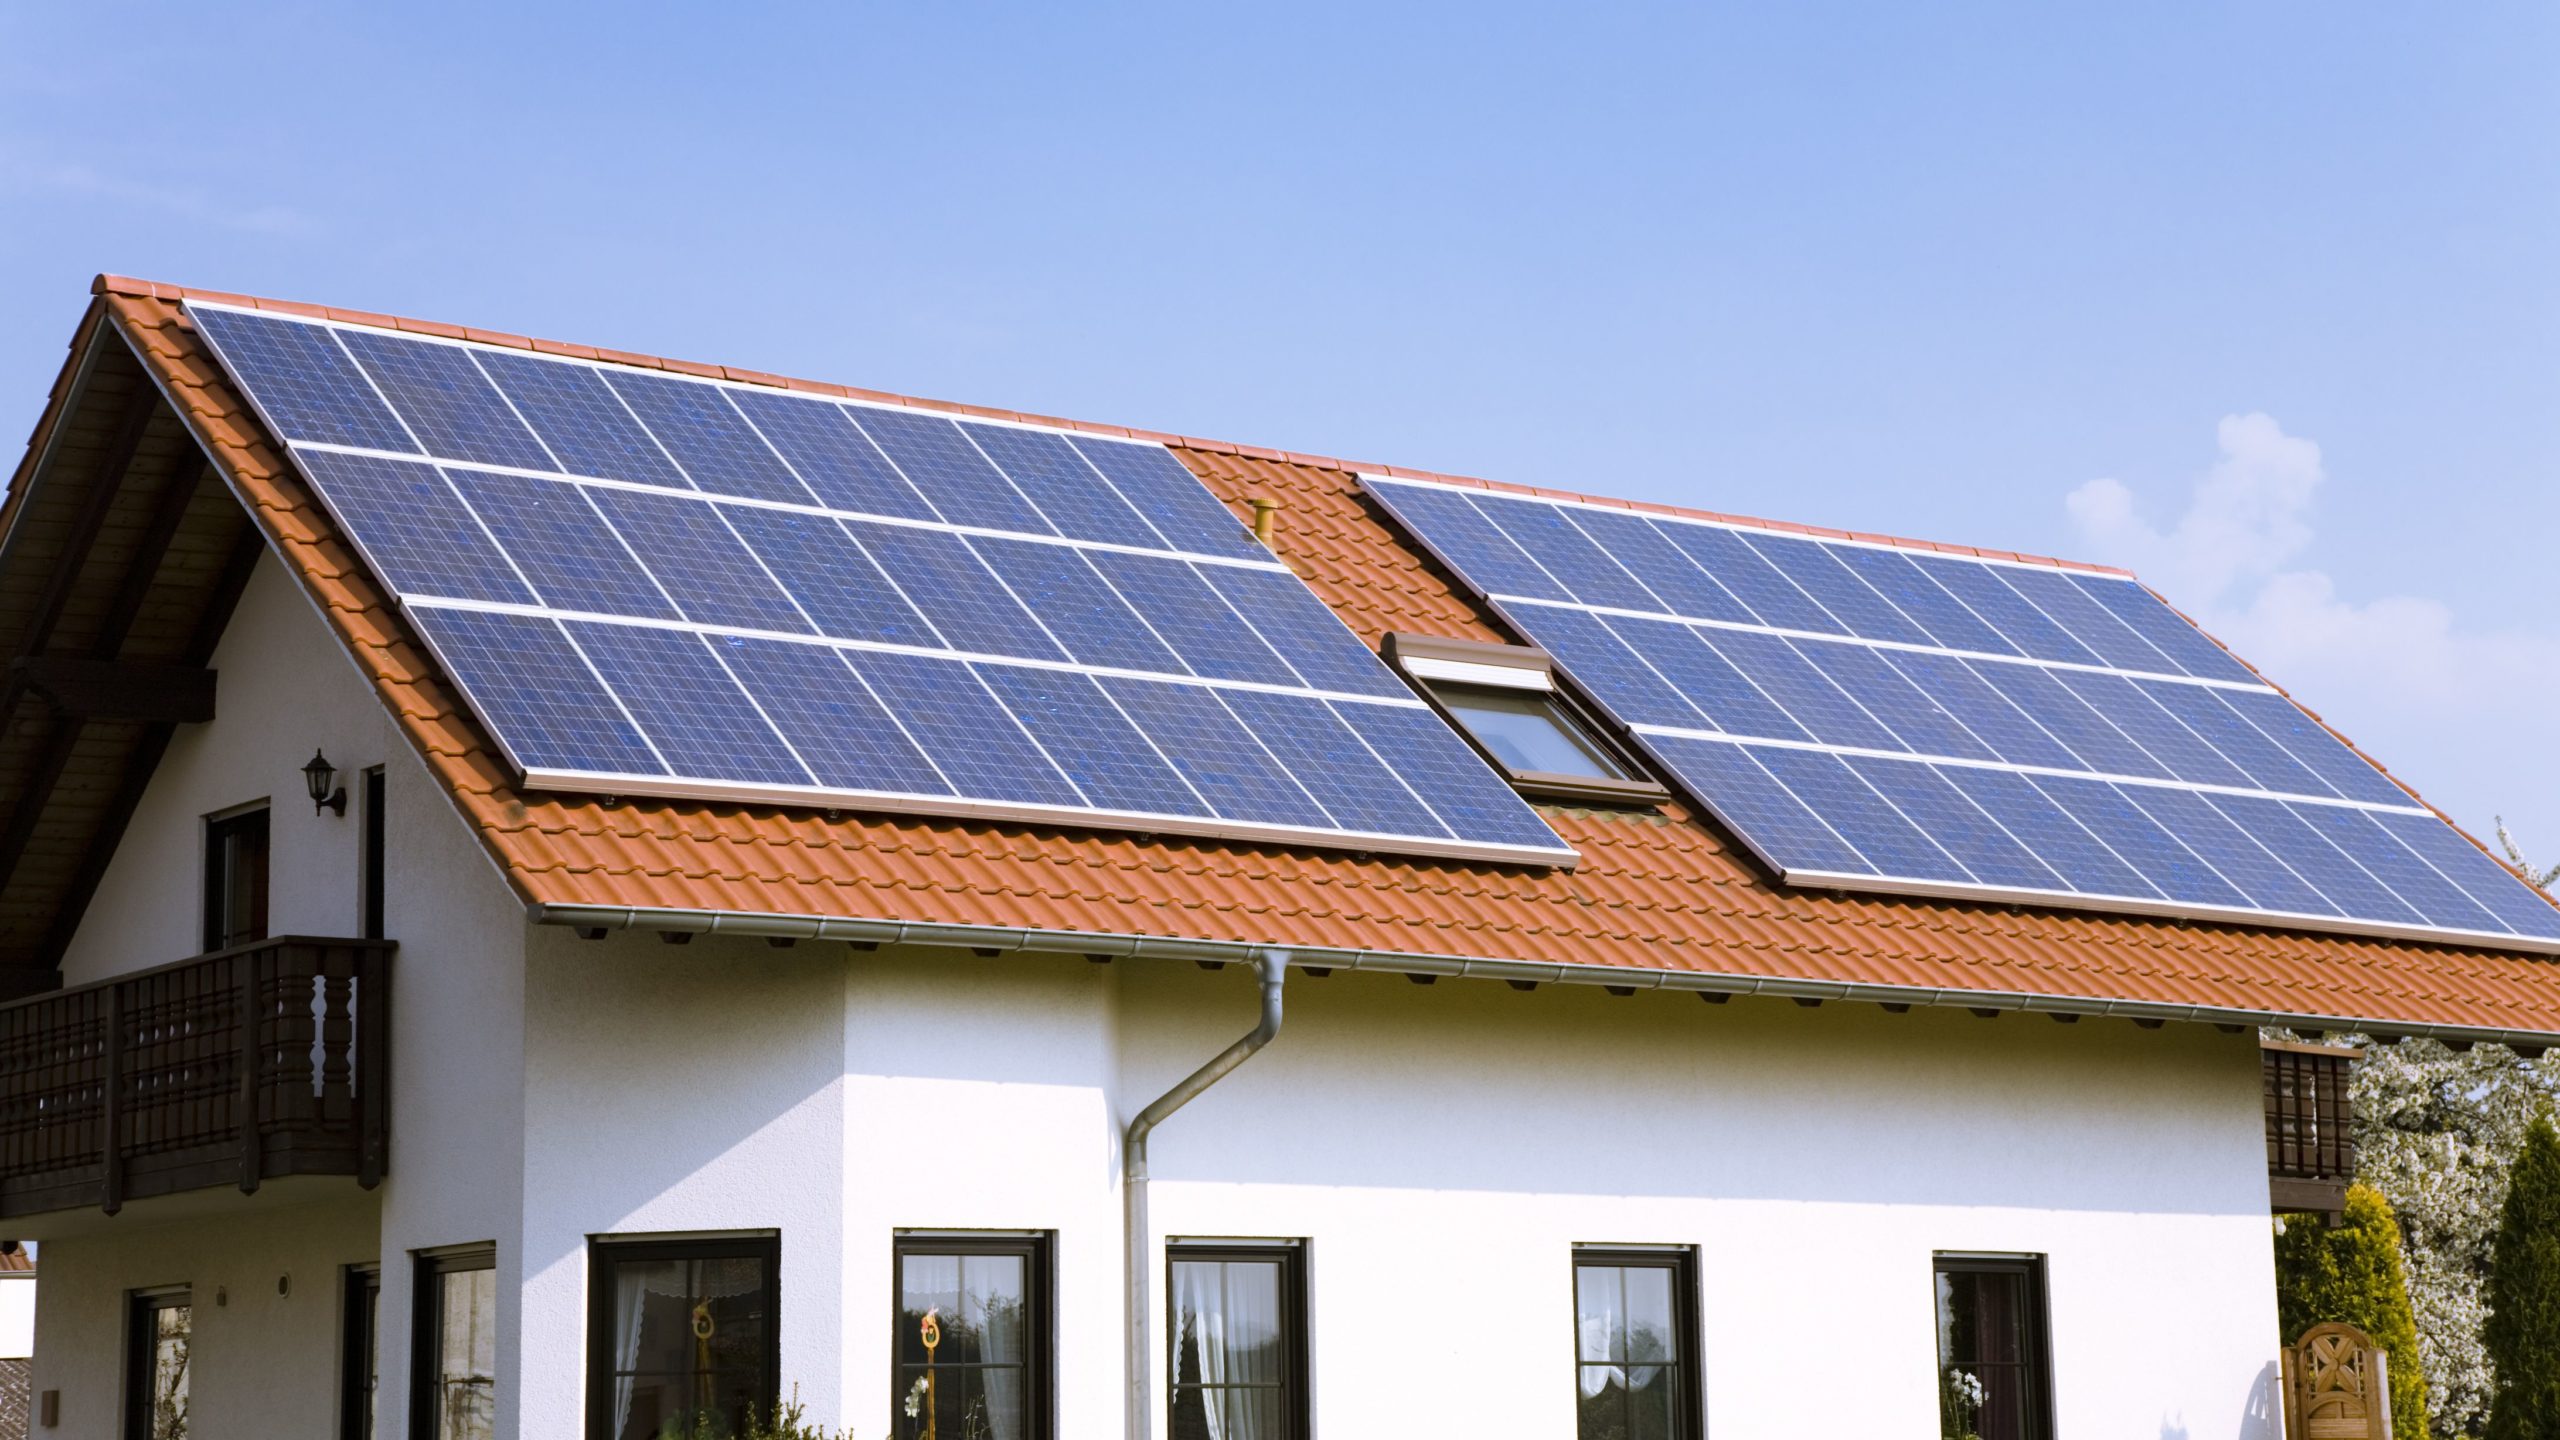 RJ - Vidigal - favela - energia solar - energia renovável - telhas solares